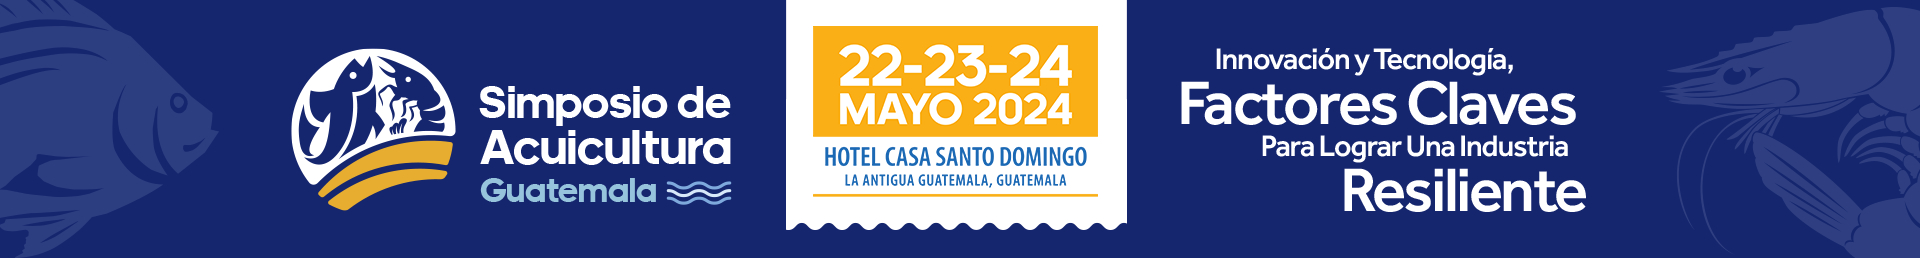 Banner Simposio Acuicultura y Pesca Guatemala 2024 Sostenibilidad